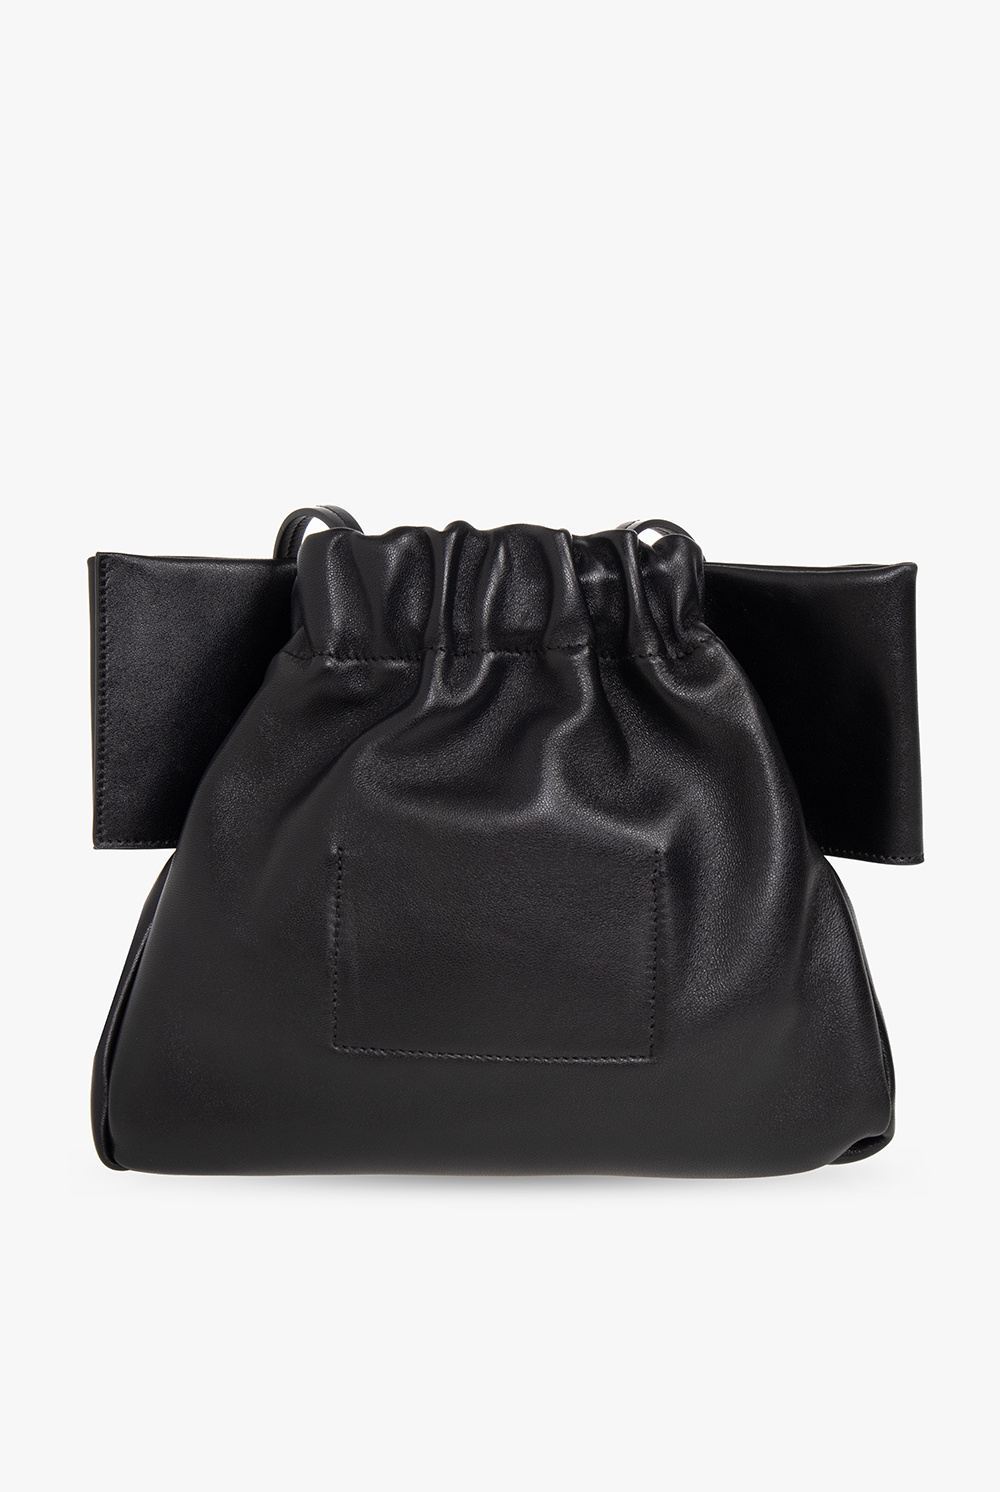 JIL SANDER ‘Bow Medium’ shoulder bag